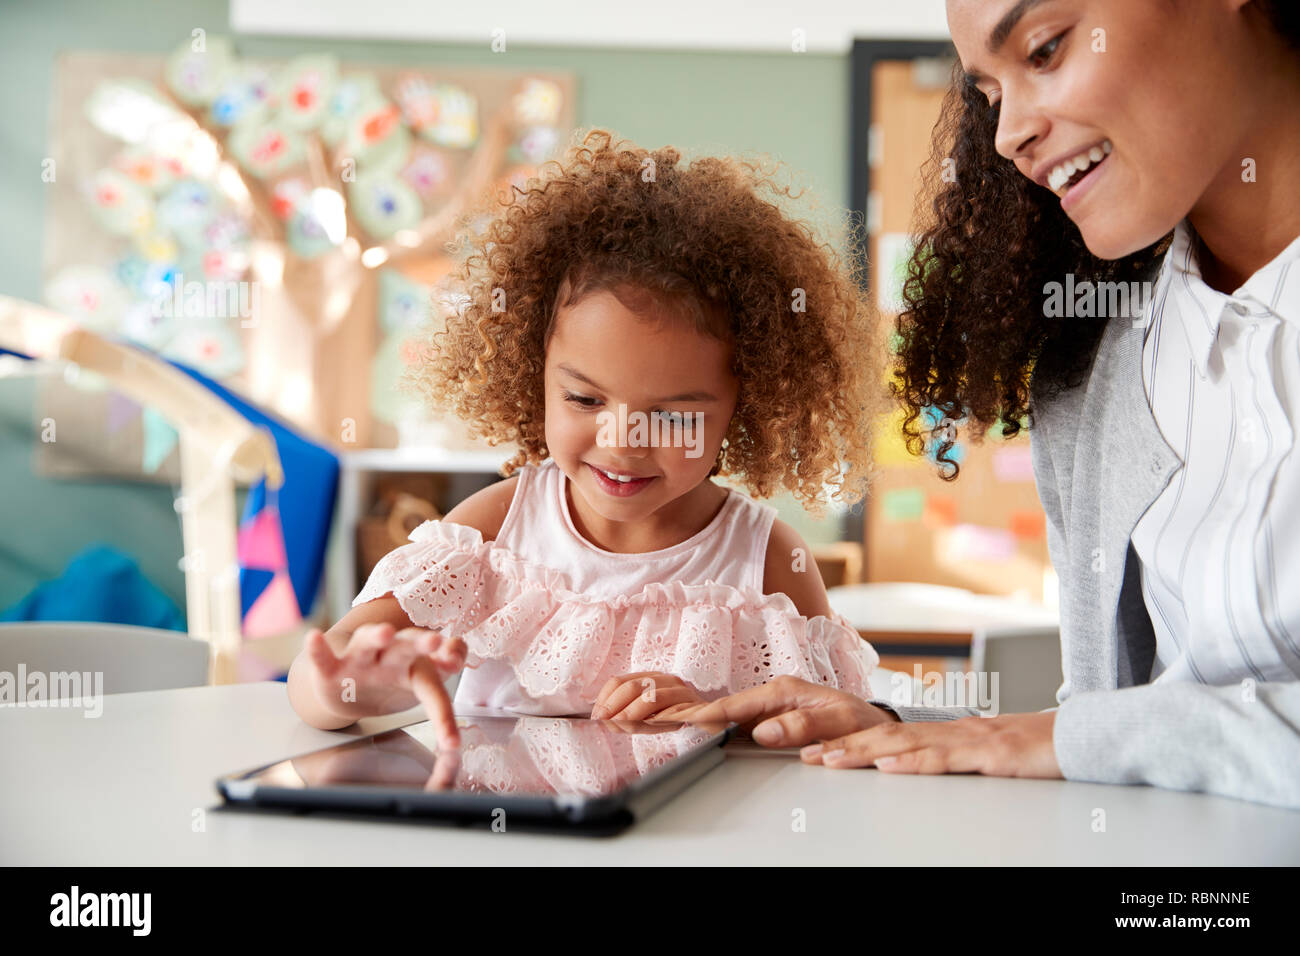 Giovani razza mista schoolgirl utilizzando un computer tablet con un neonato femmina insegnante di scuola, lavorando su un insieme in una classe, close up Foto Stock